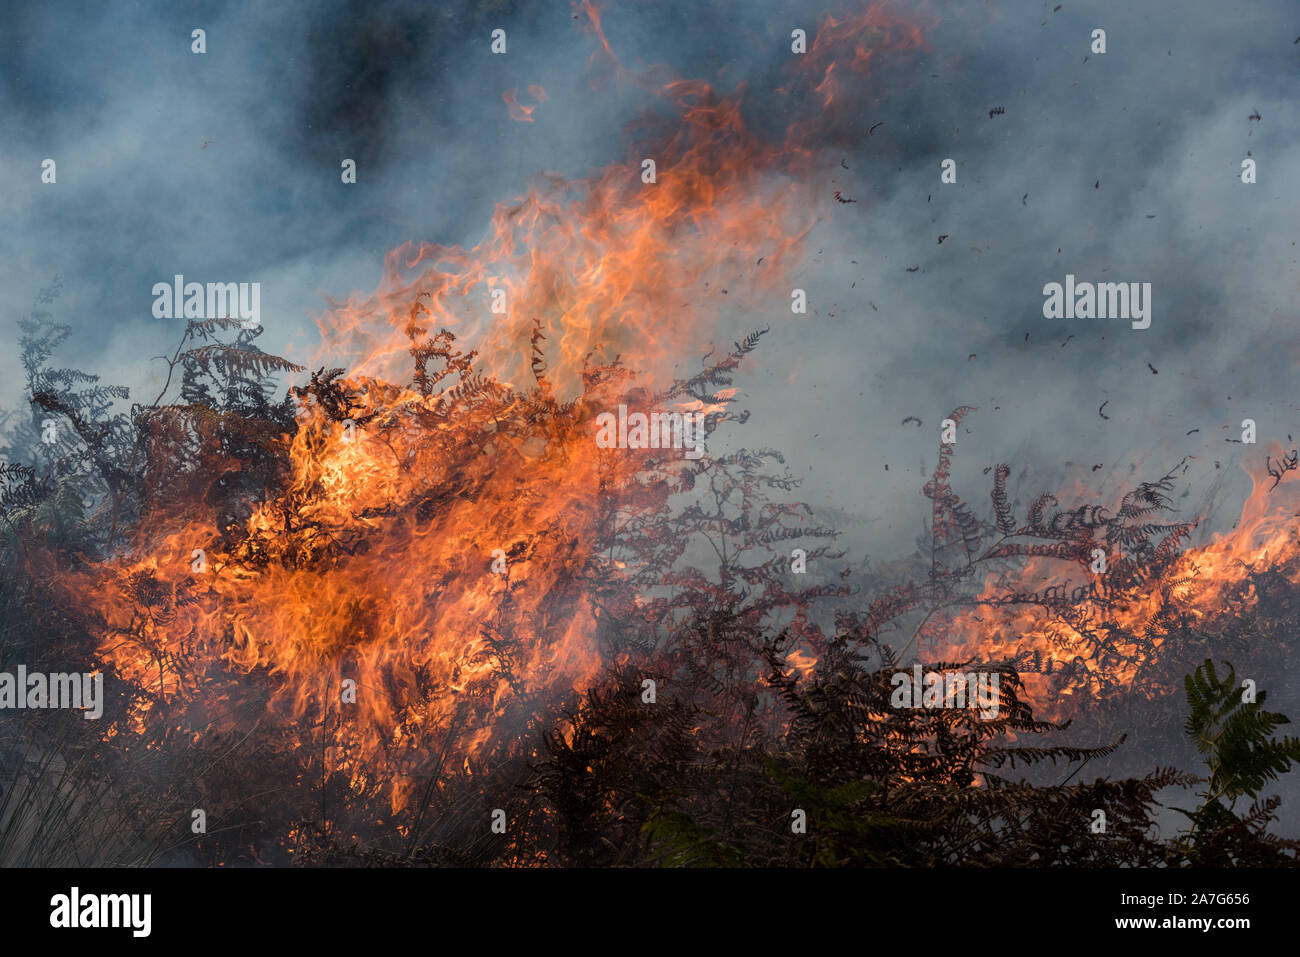 Gement del movimiento del Grouse por quemadura del brezo, parque nacional del districto de pico, Inglaterra Foto de stock